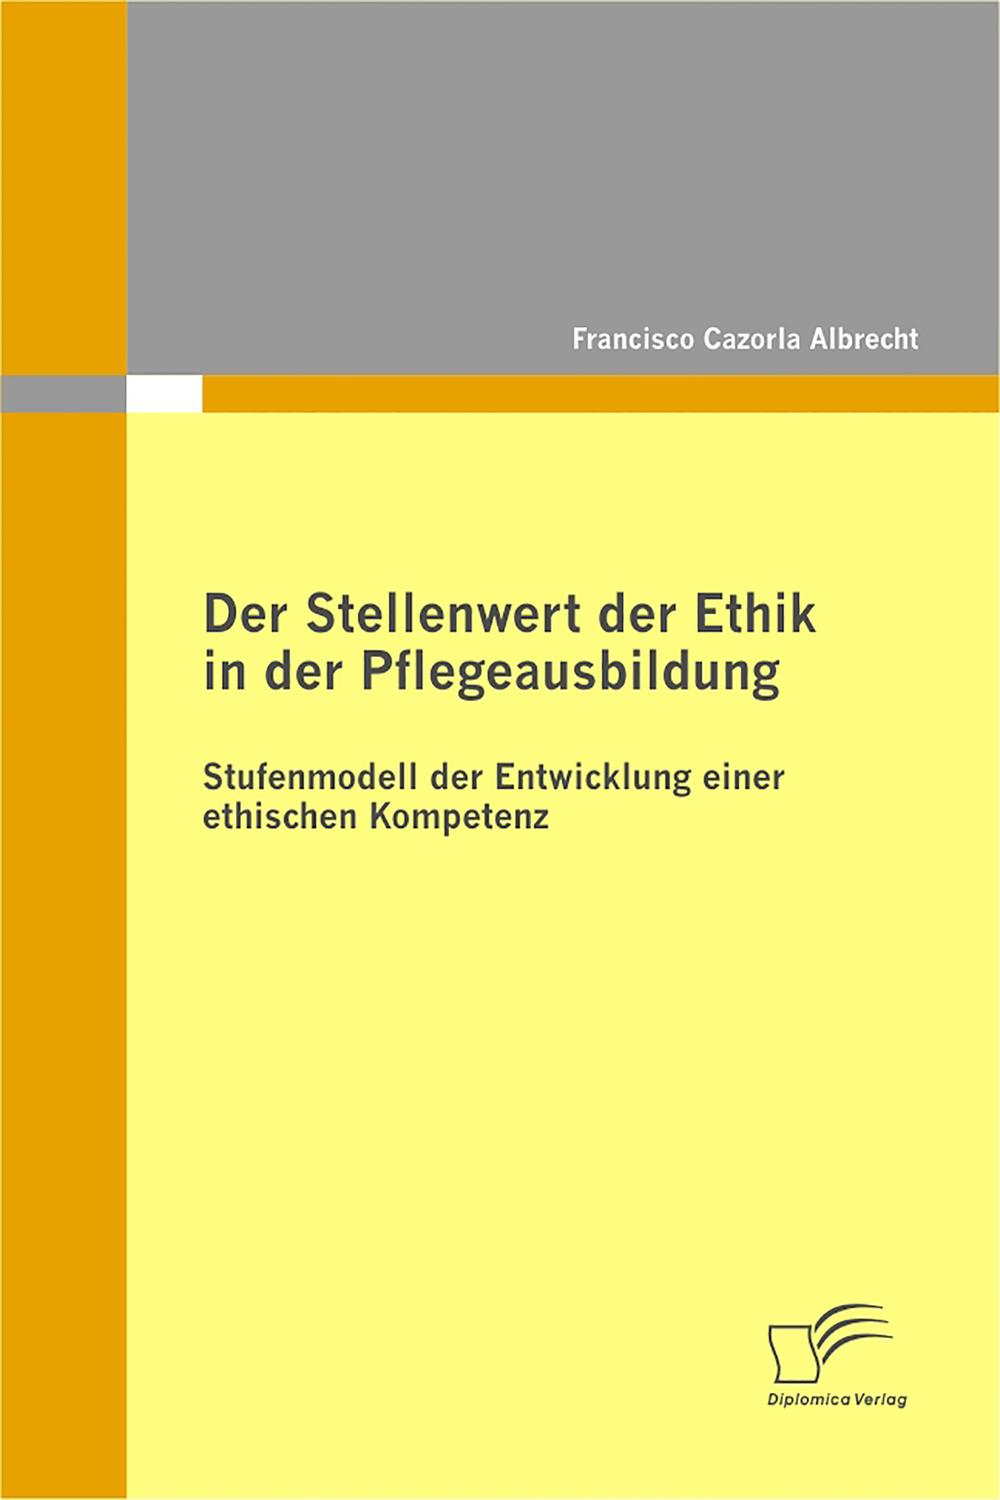 Der Stellenwert der Ethik in der Pflegeausbildung: Stufenmodell der Entwicklung einer ethischen Kompetenz - Francisco Cazorla Albrecht